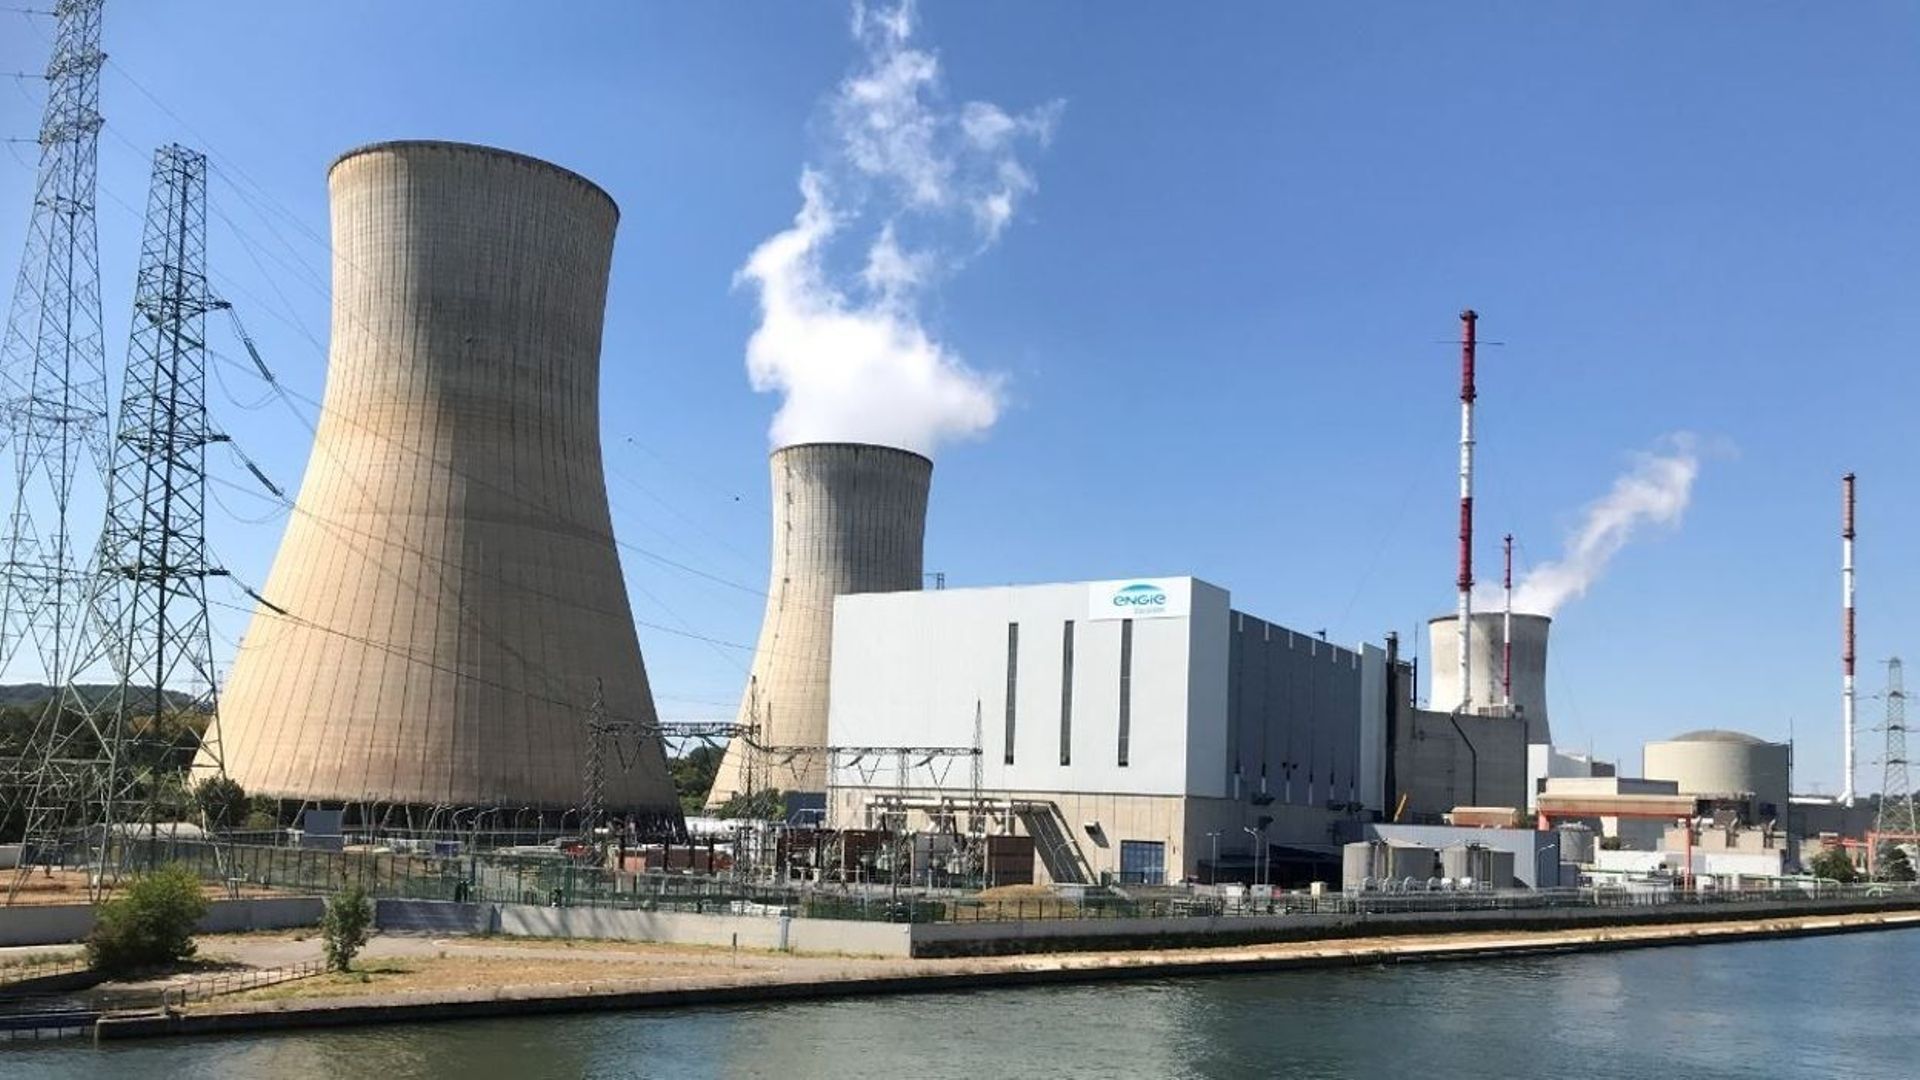 Plus de 3000 emplois menacés à la centrale de Tihange avec une sortie du nucléaire qui se dessine